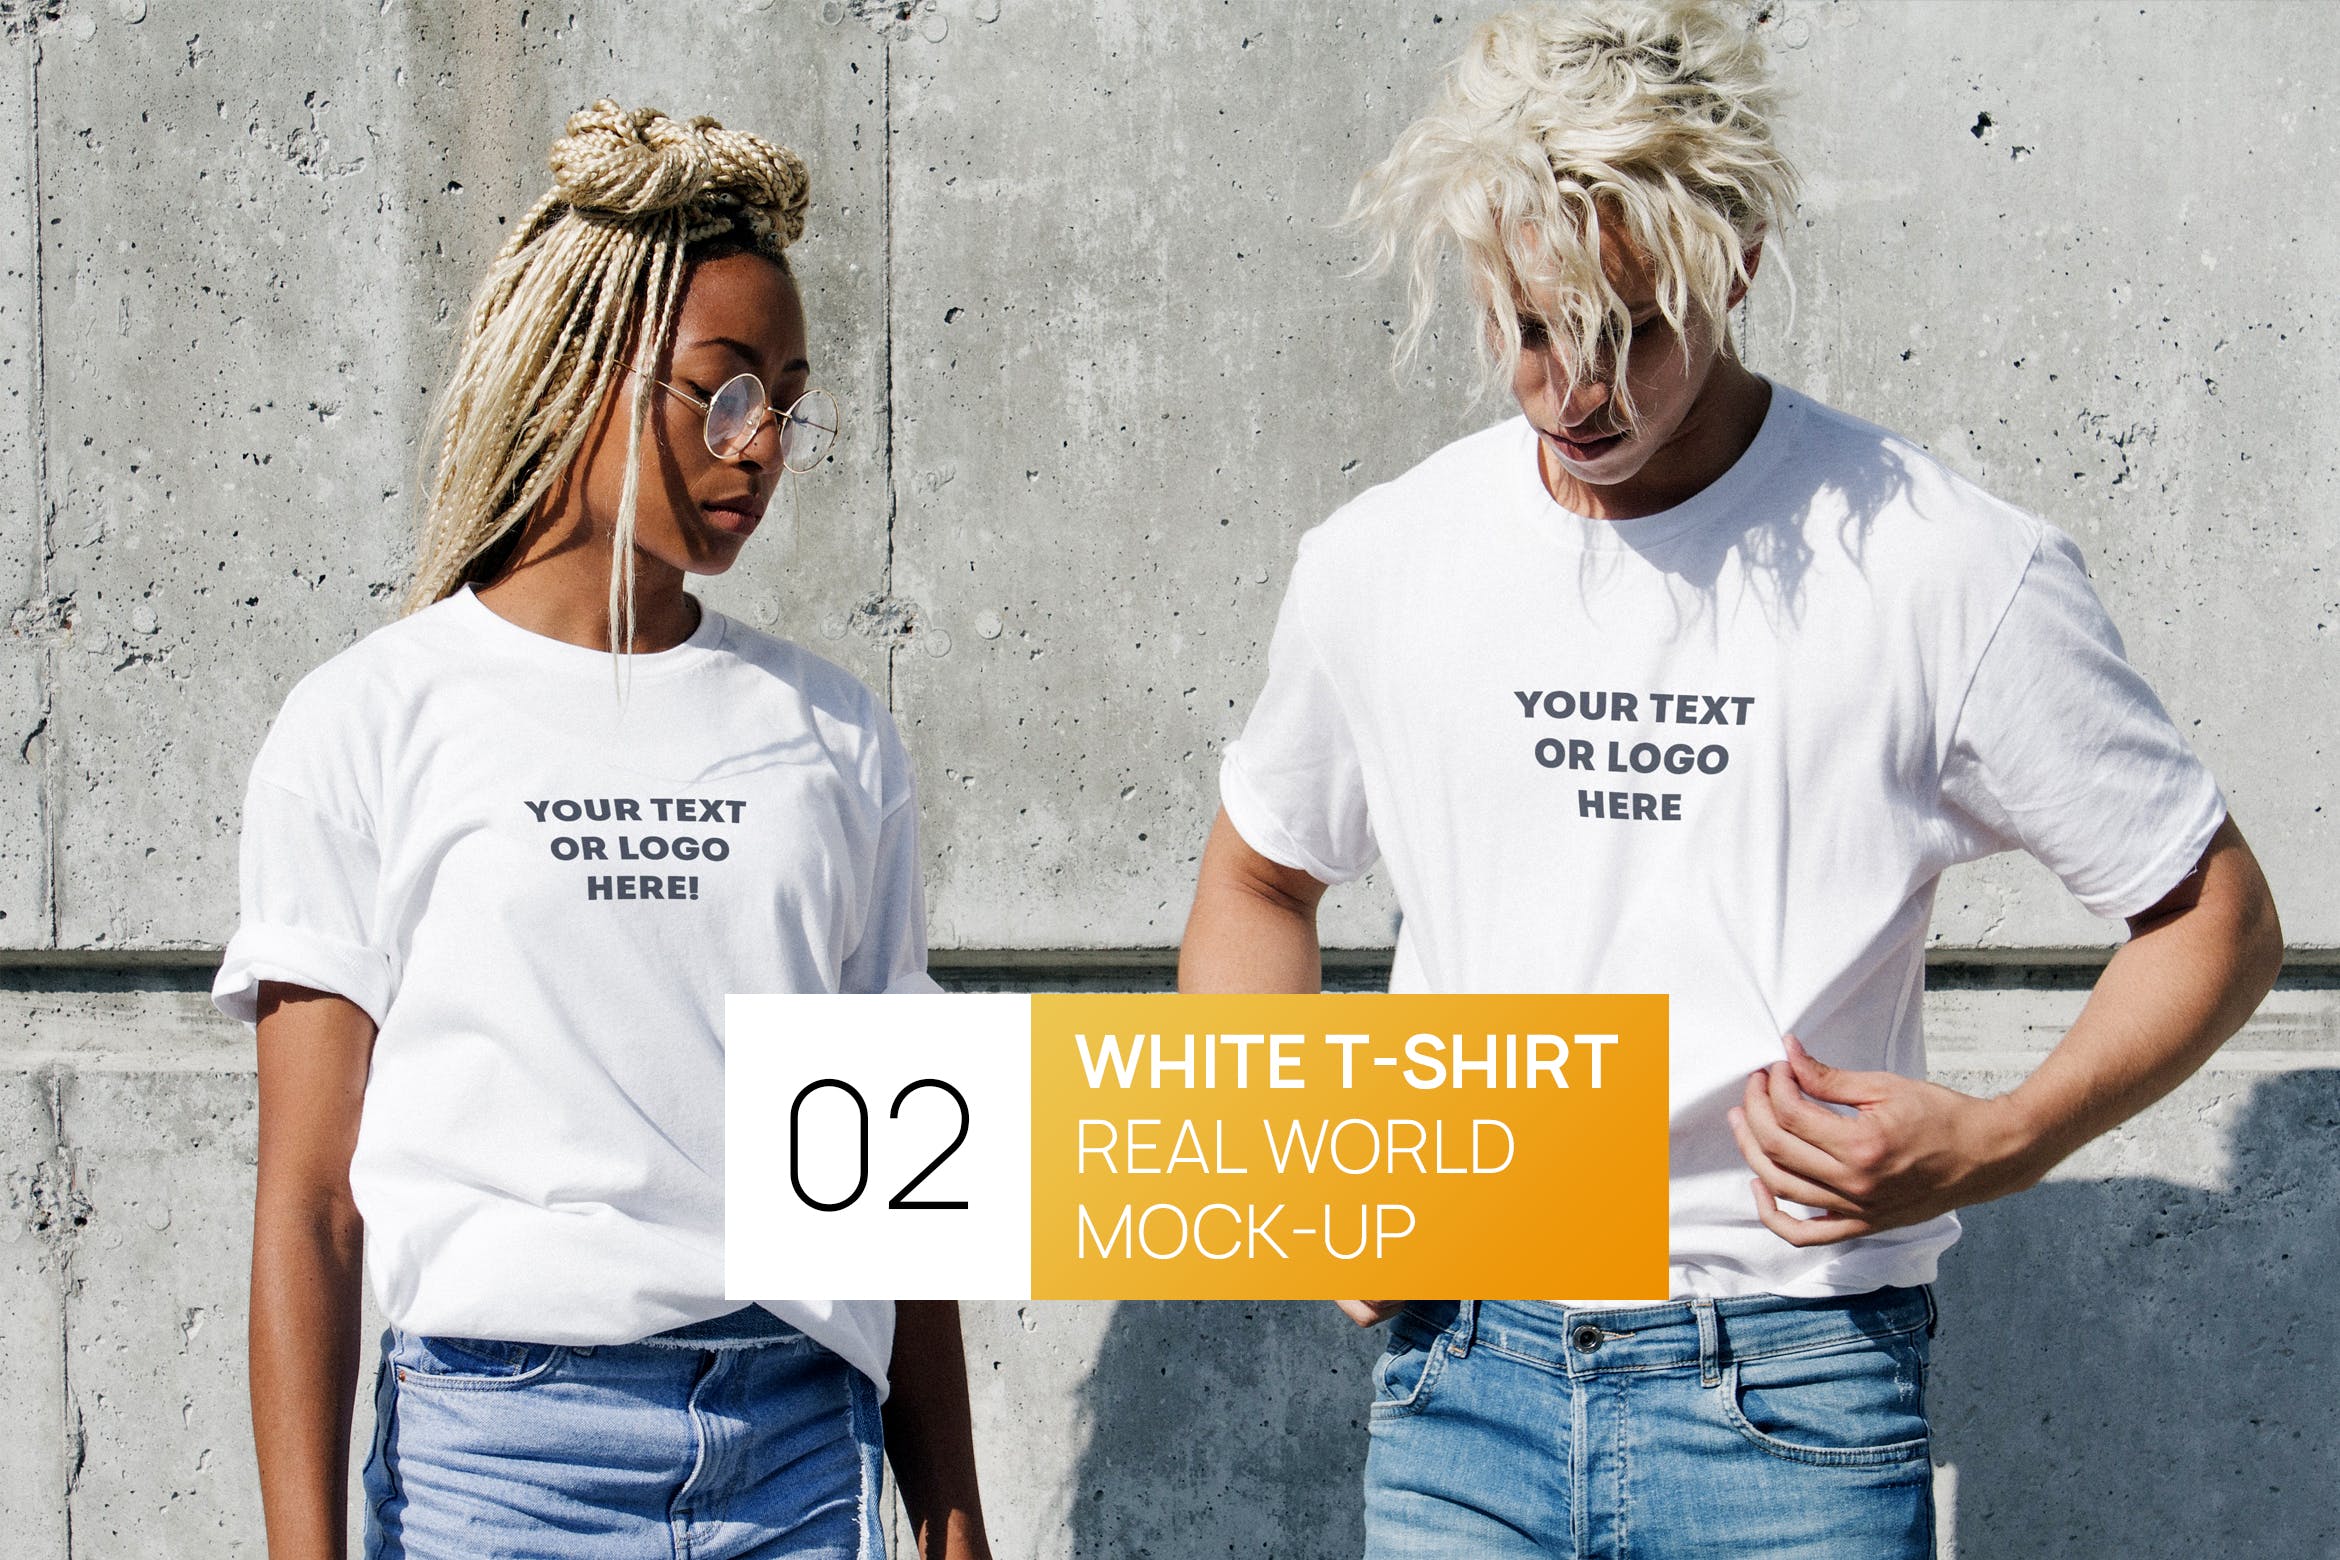 情侣T恤服装设计效果图样机素材库精选 Two Persons White T-Shirt Real World Photo Mock-up插图